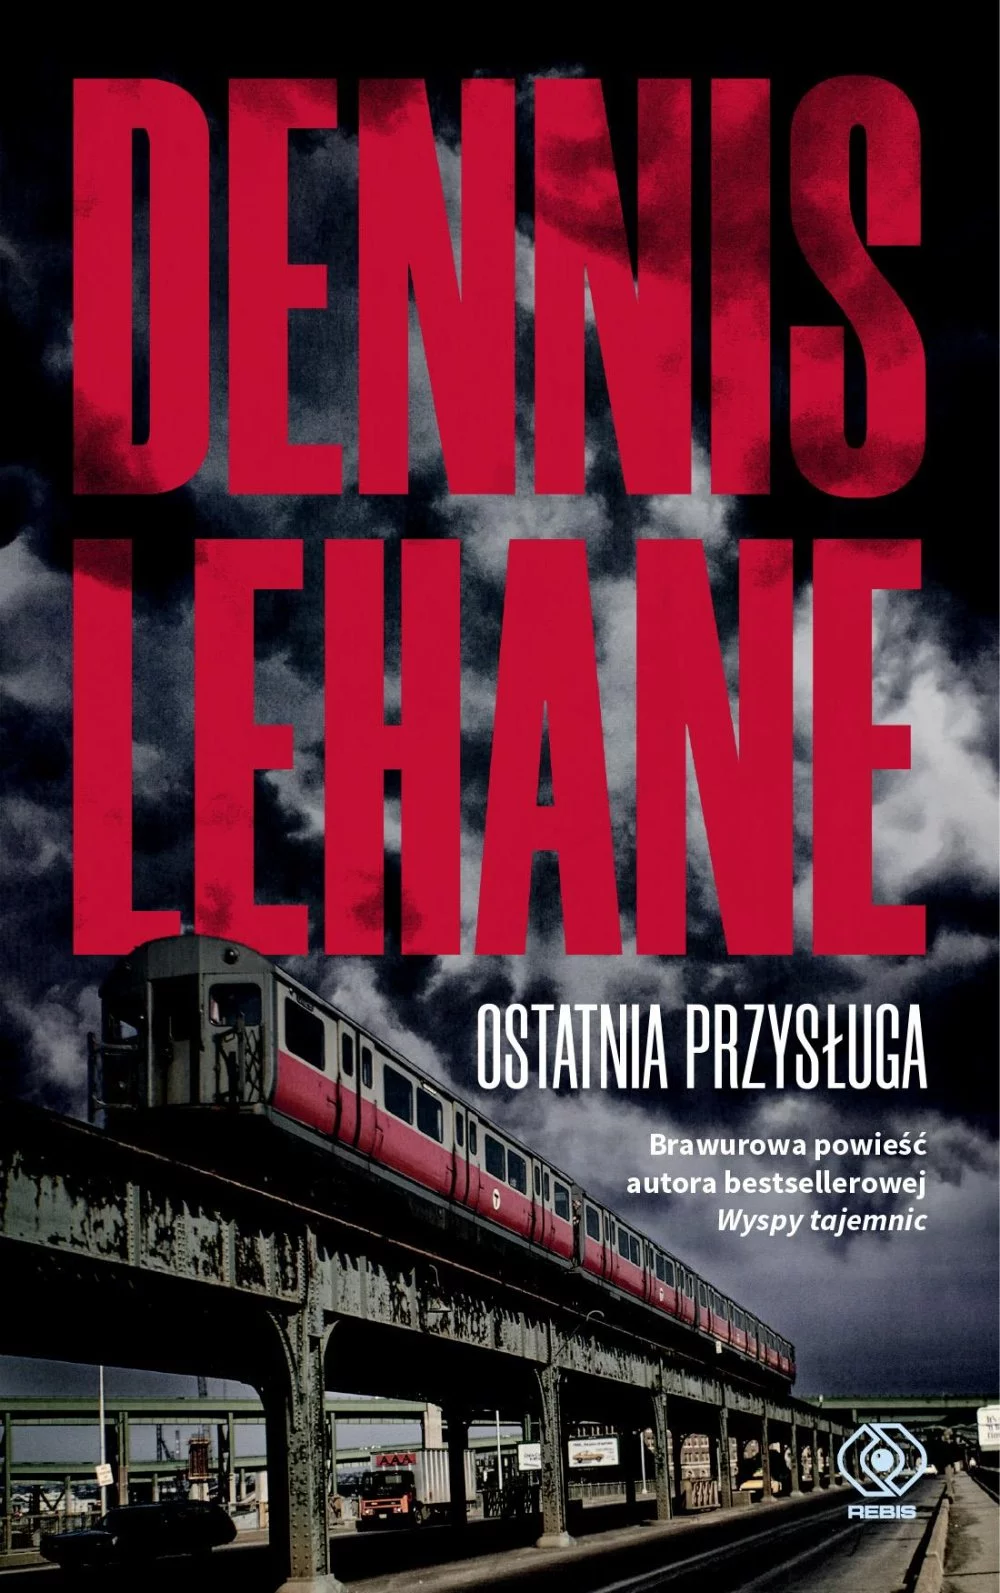 Dennis Lehane - Ostatnia przysługa - recenzja książki